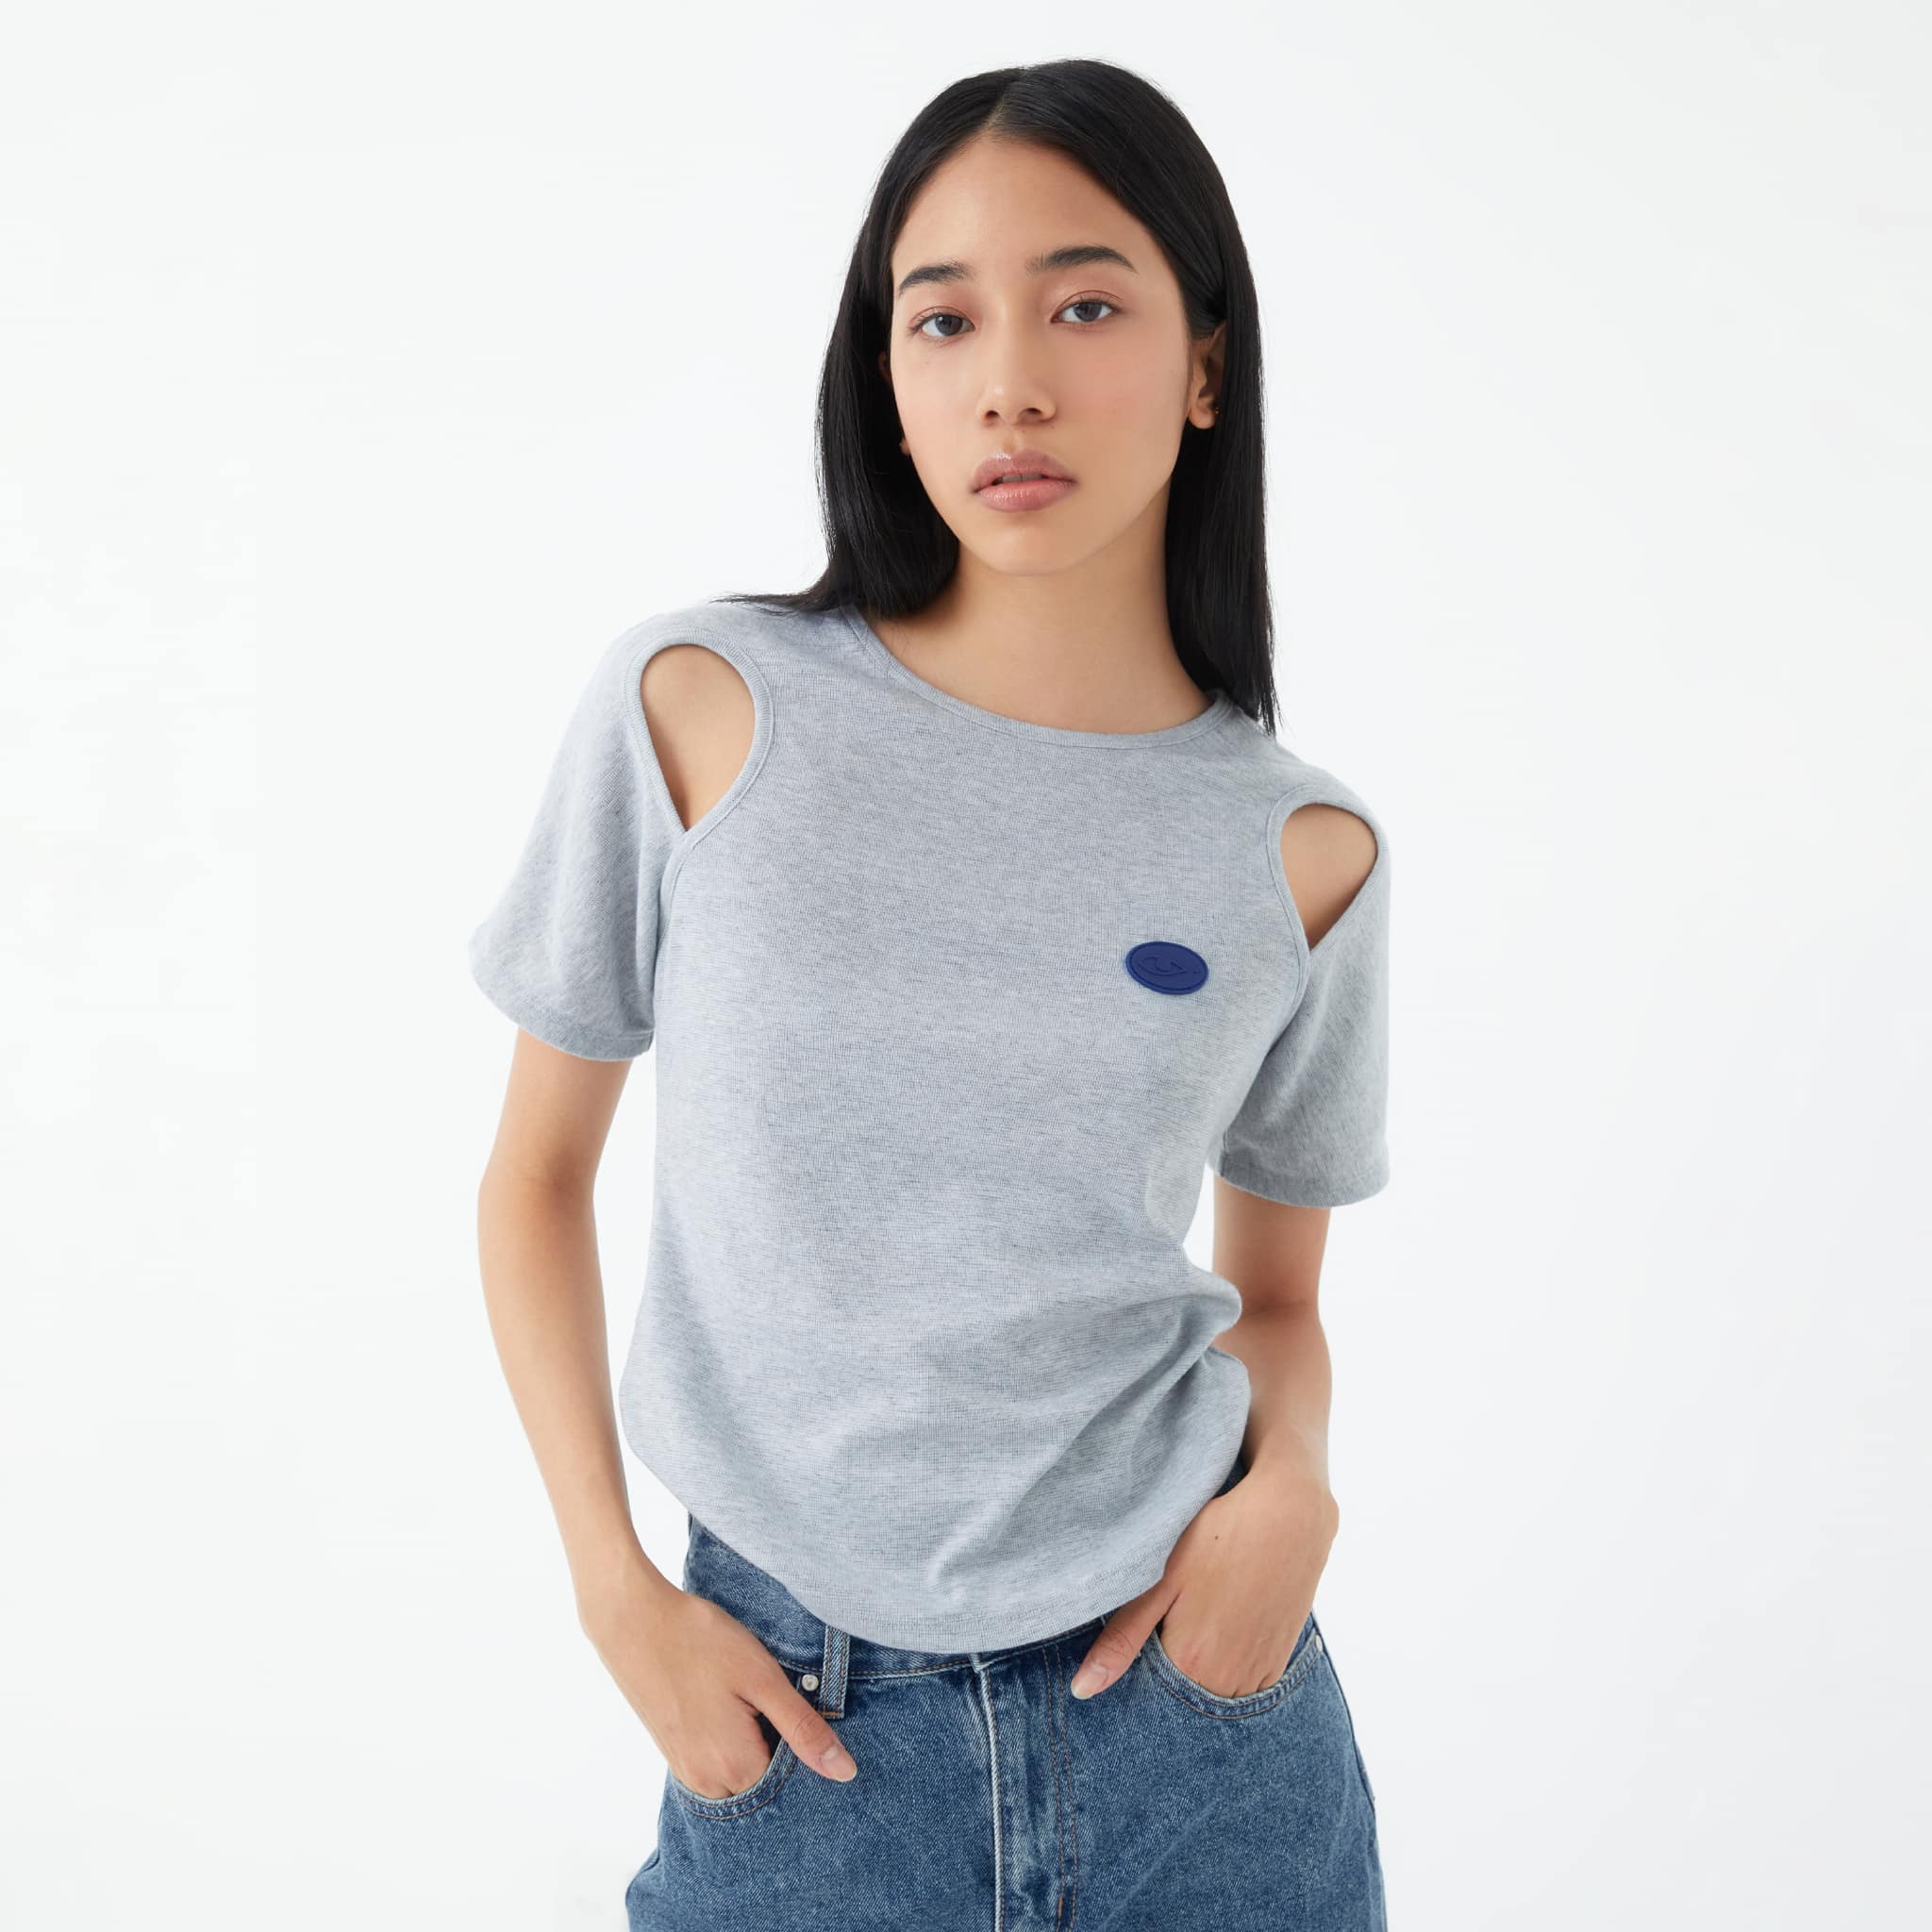 The Blue T-shirt và Recycle Plastic Shoulder Cutout Cotton Top